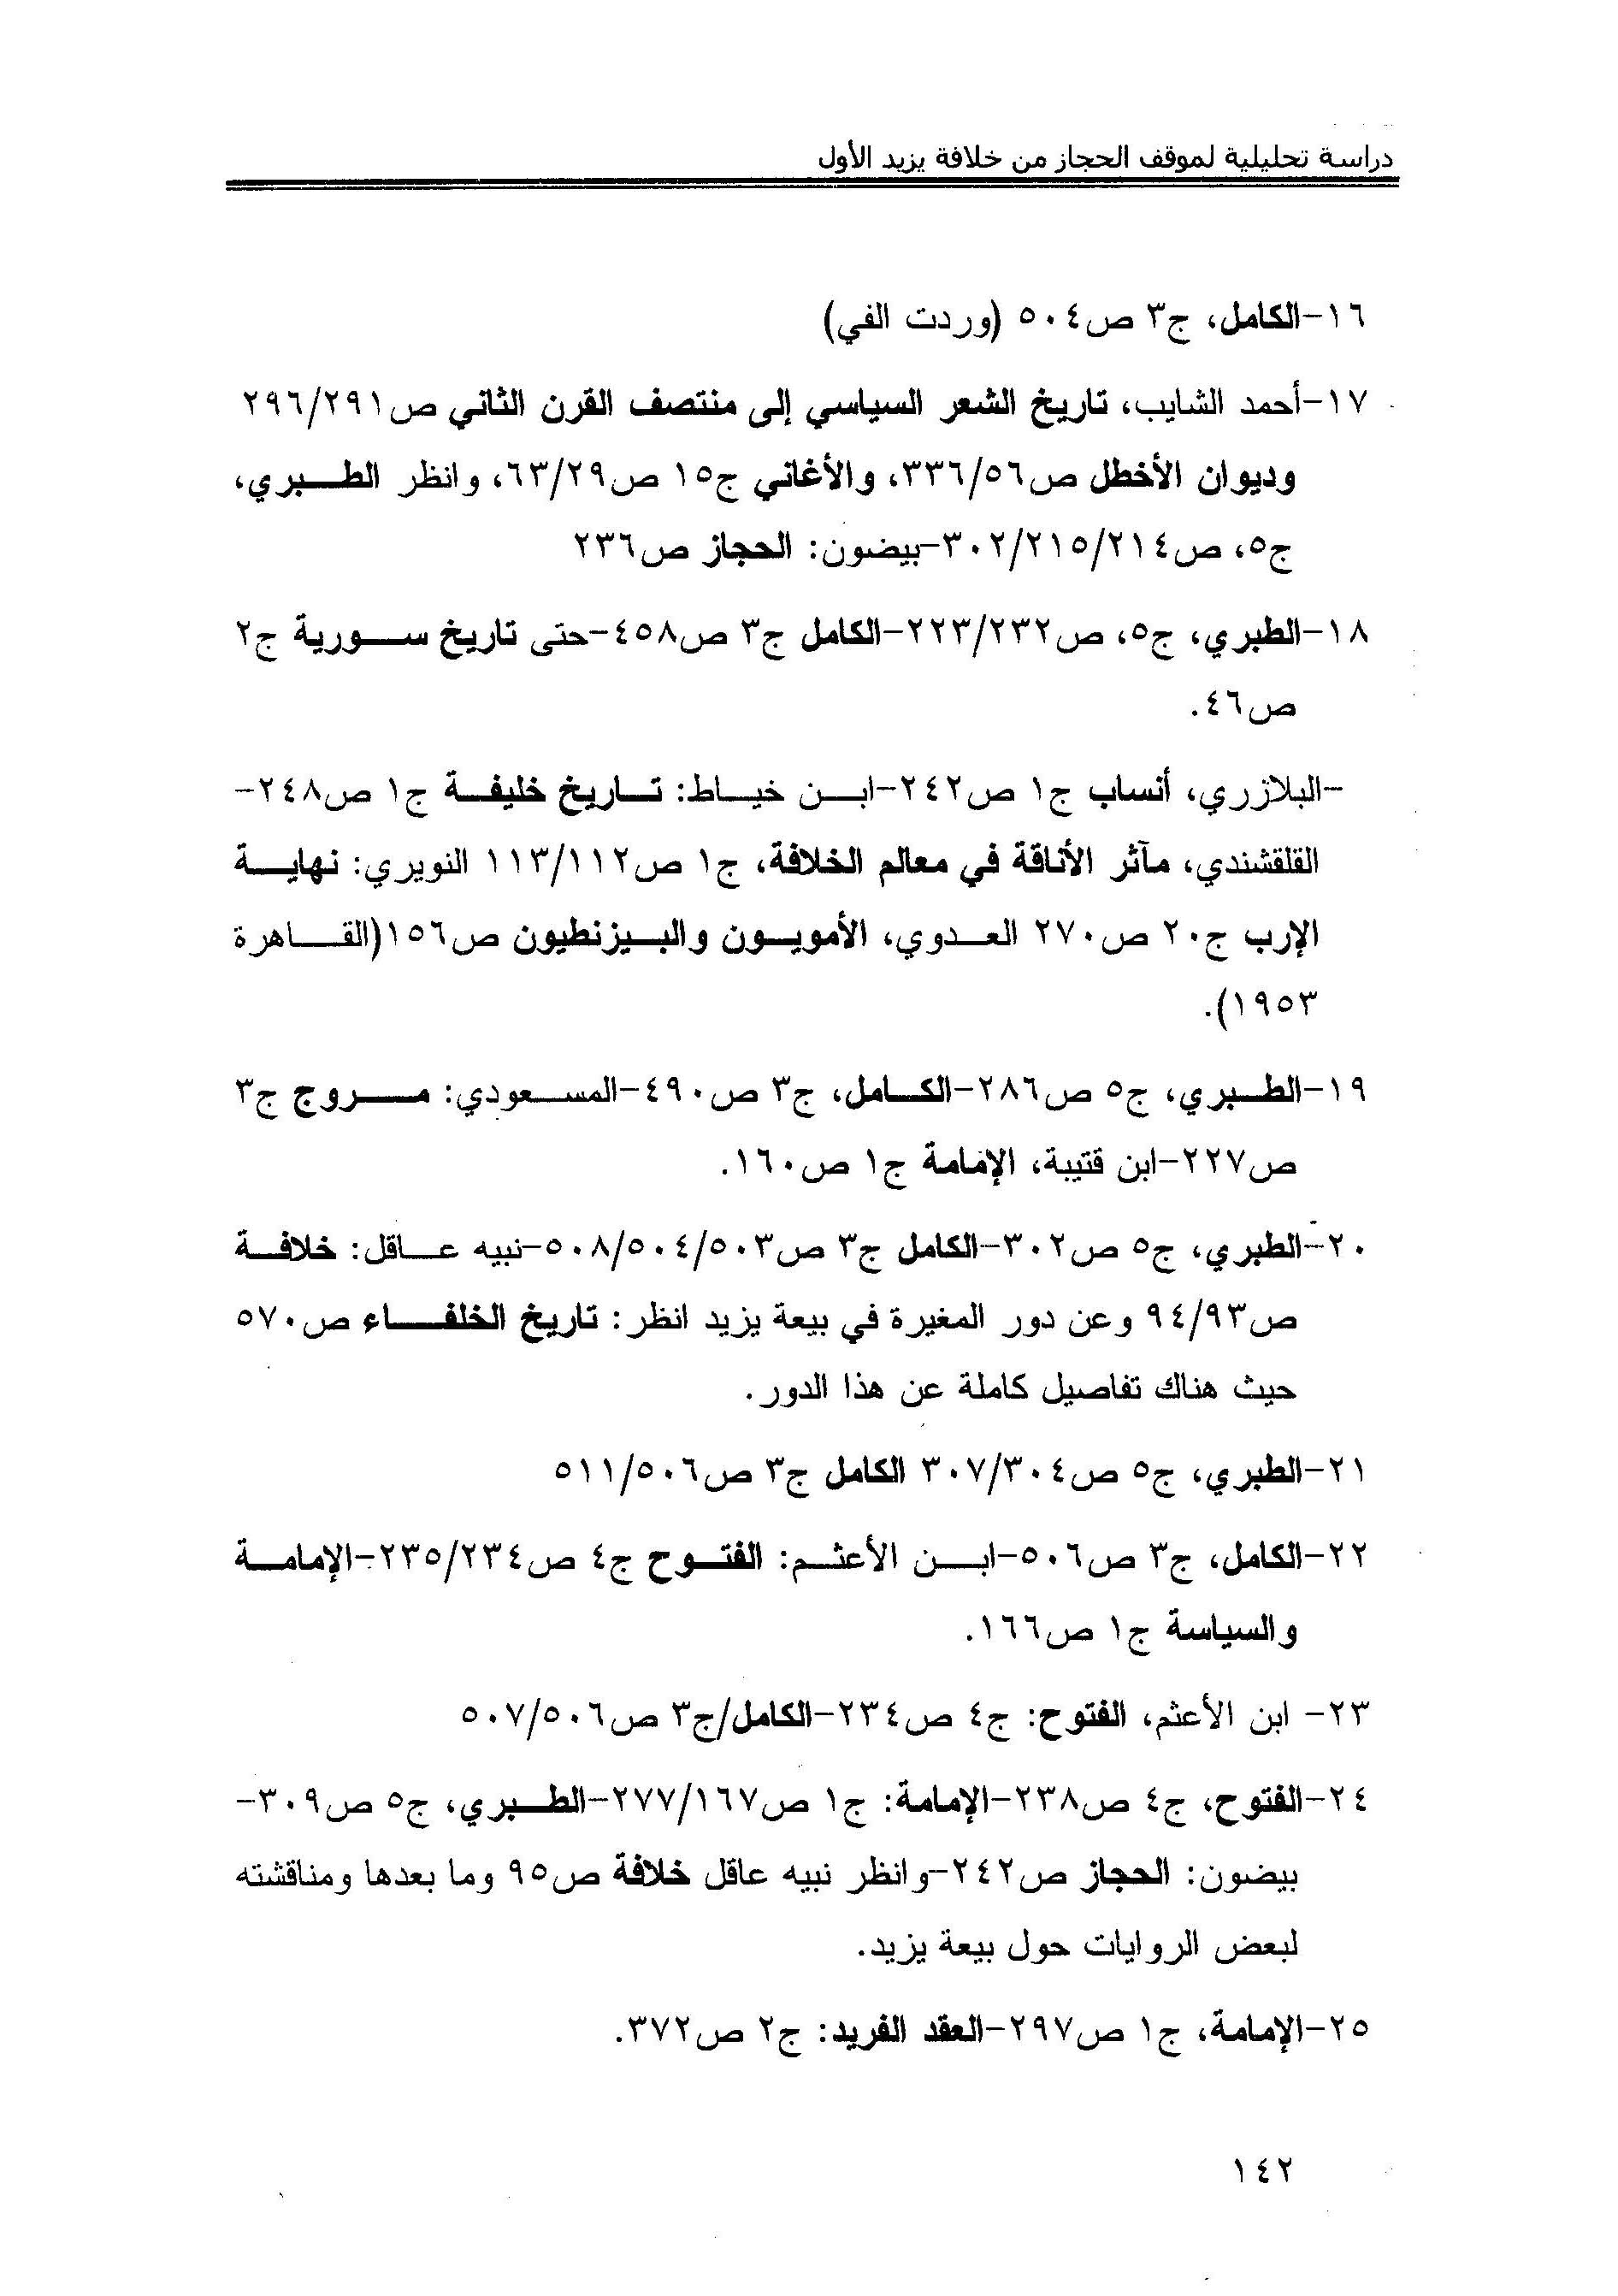 الشعر السياسي الأموي أحمد الشايب